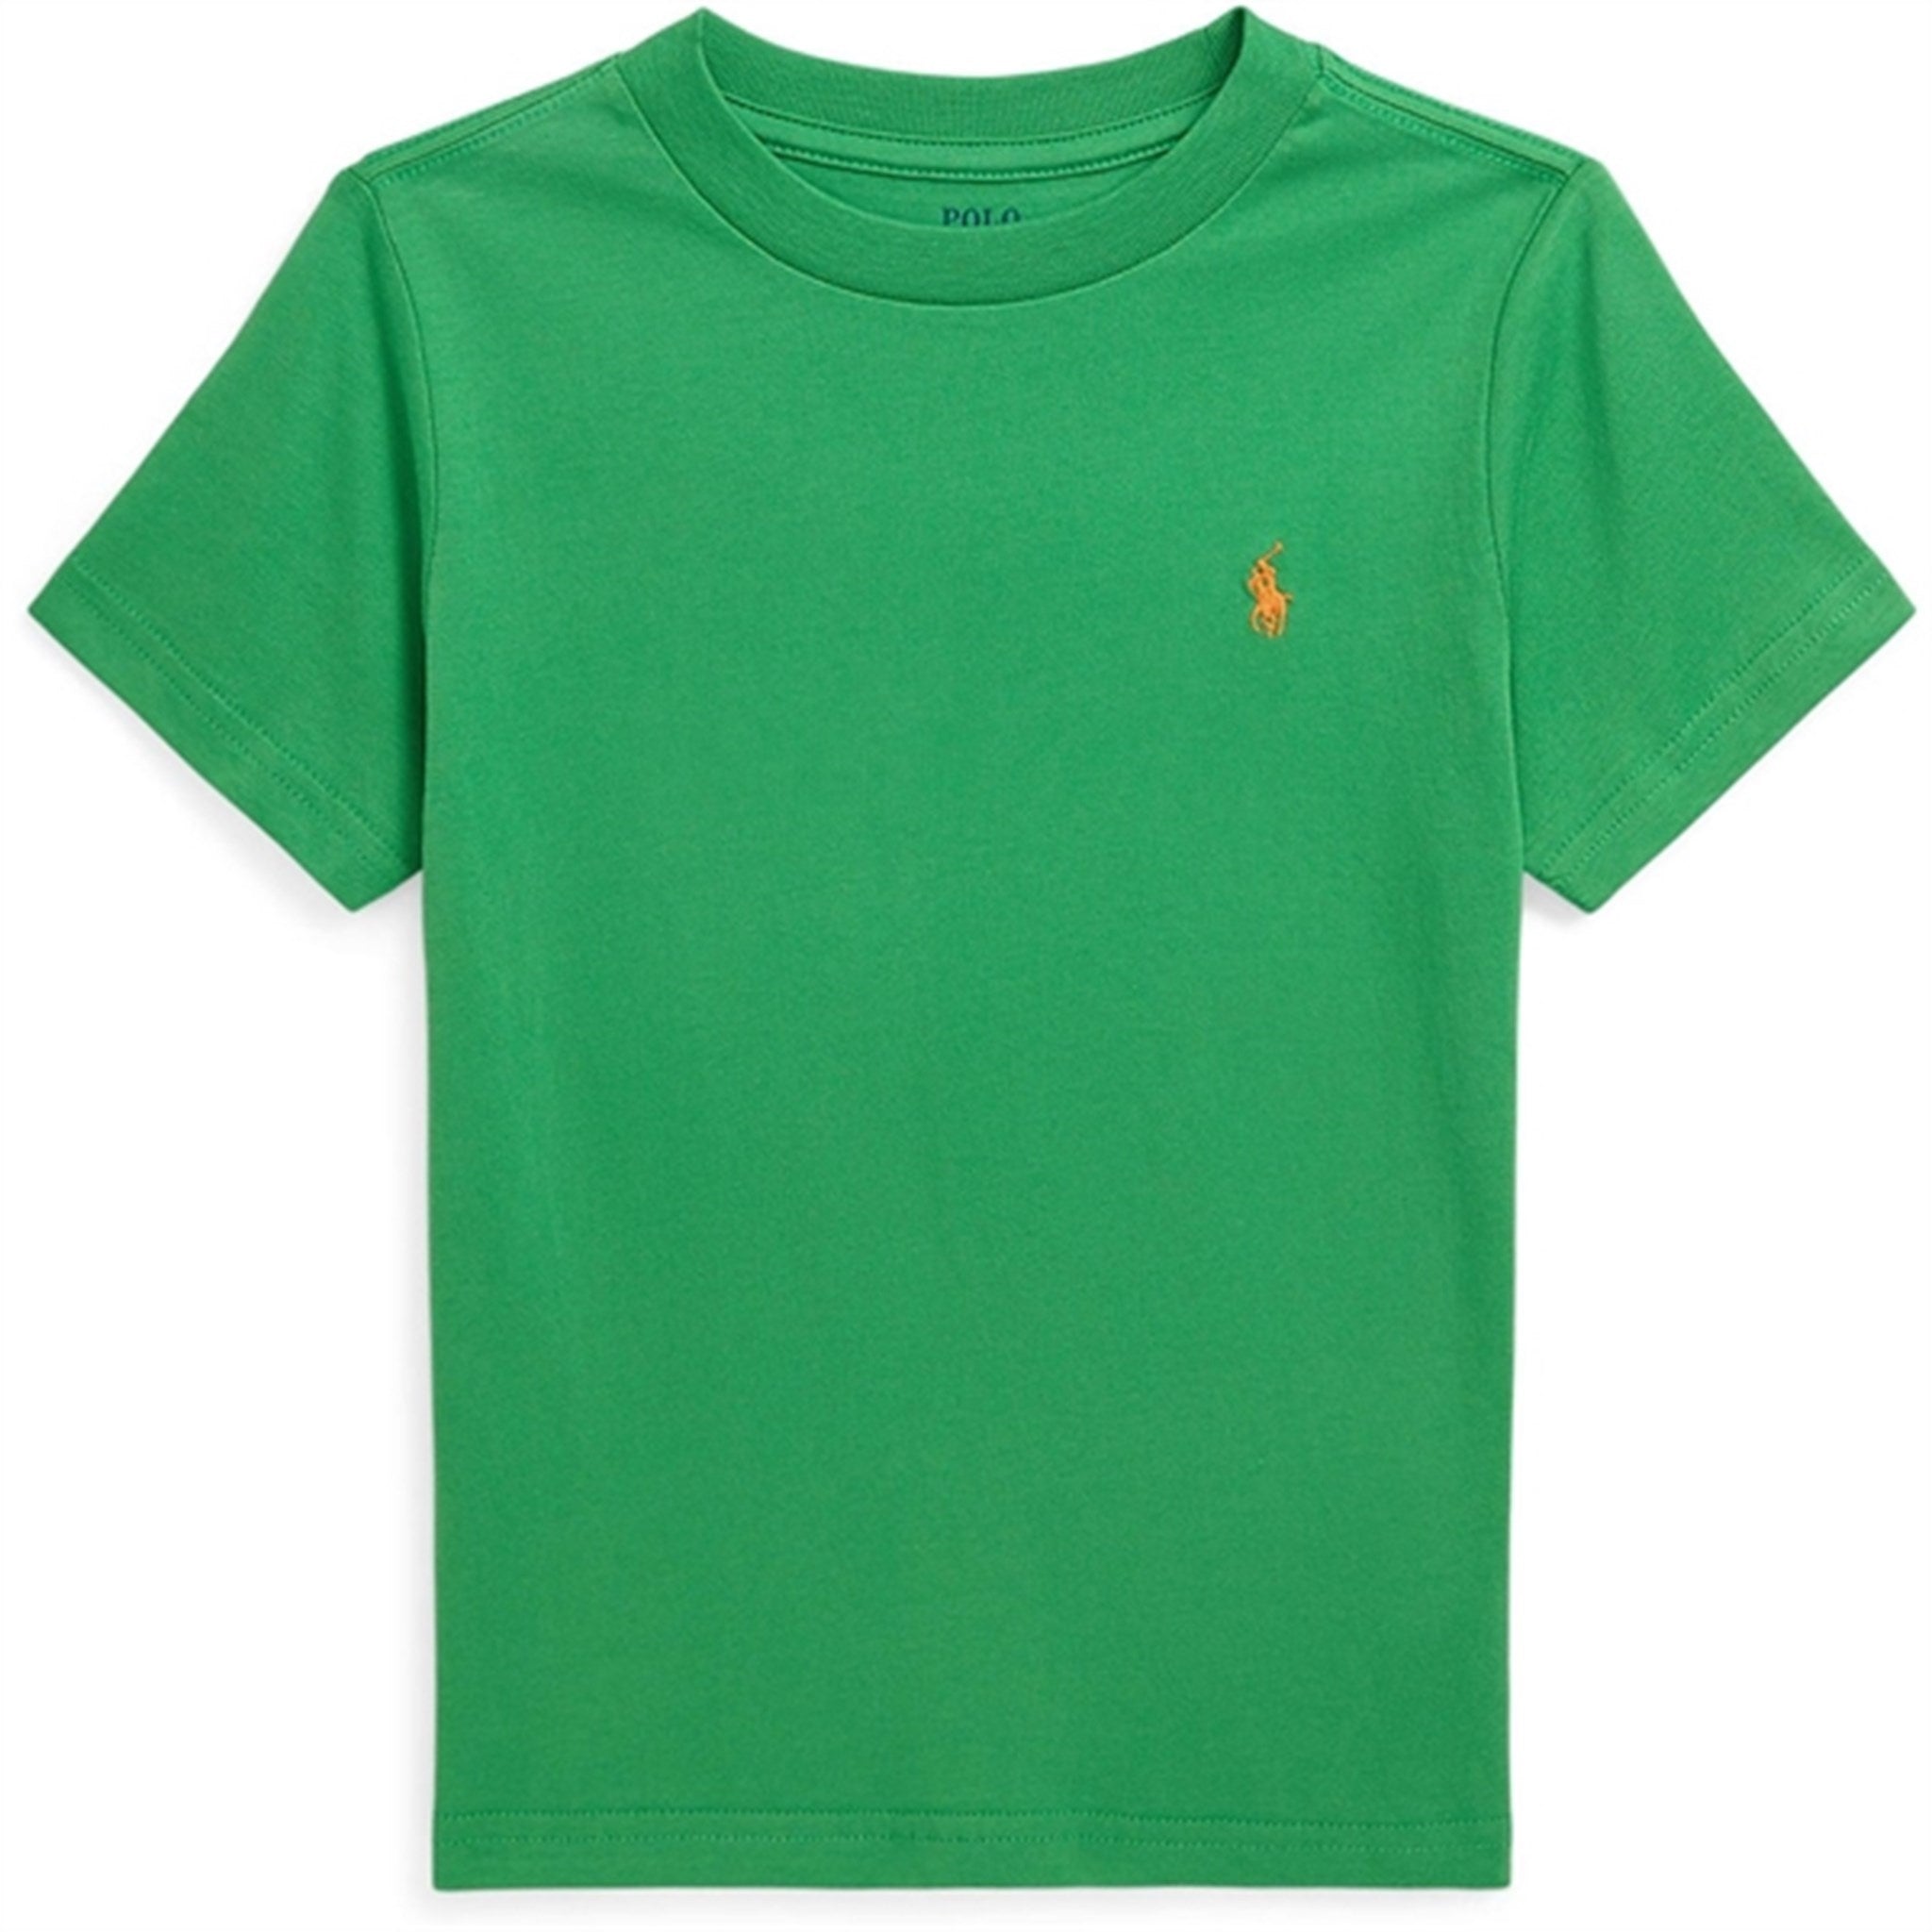 Polo Ralph Lauren Boys T-Shirt Preppy Green